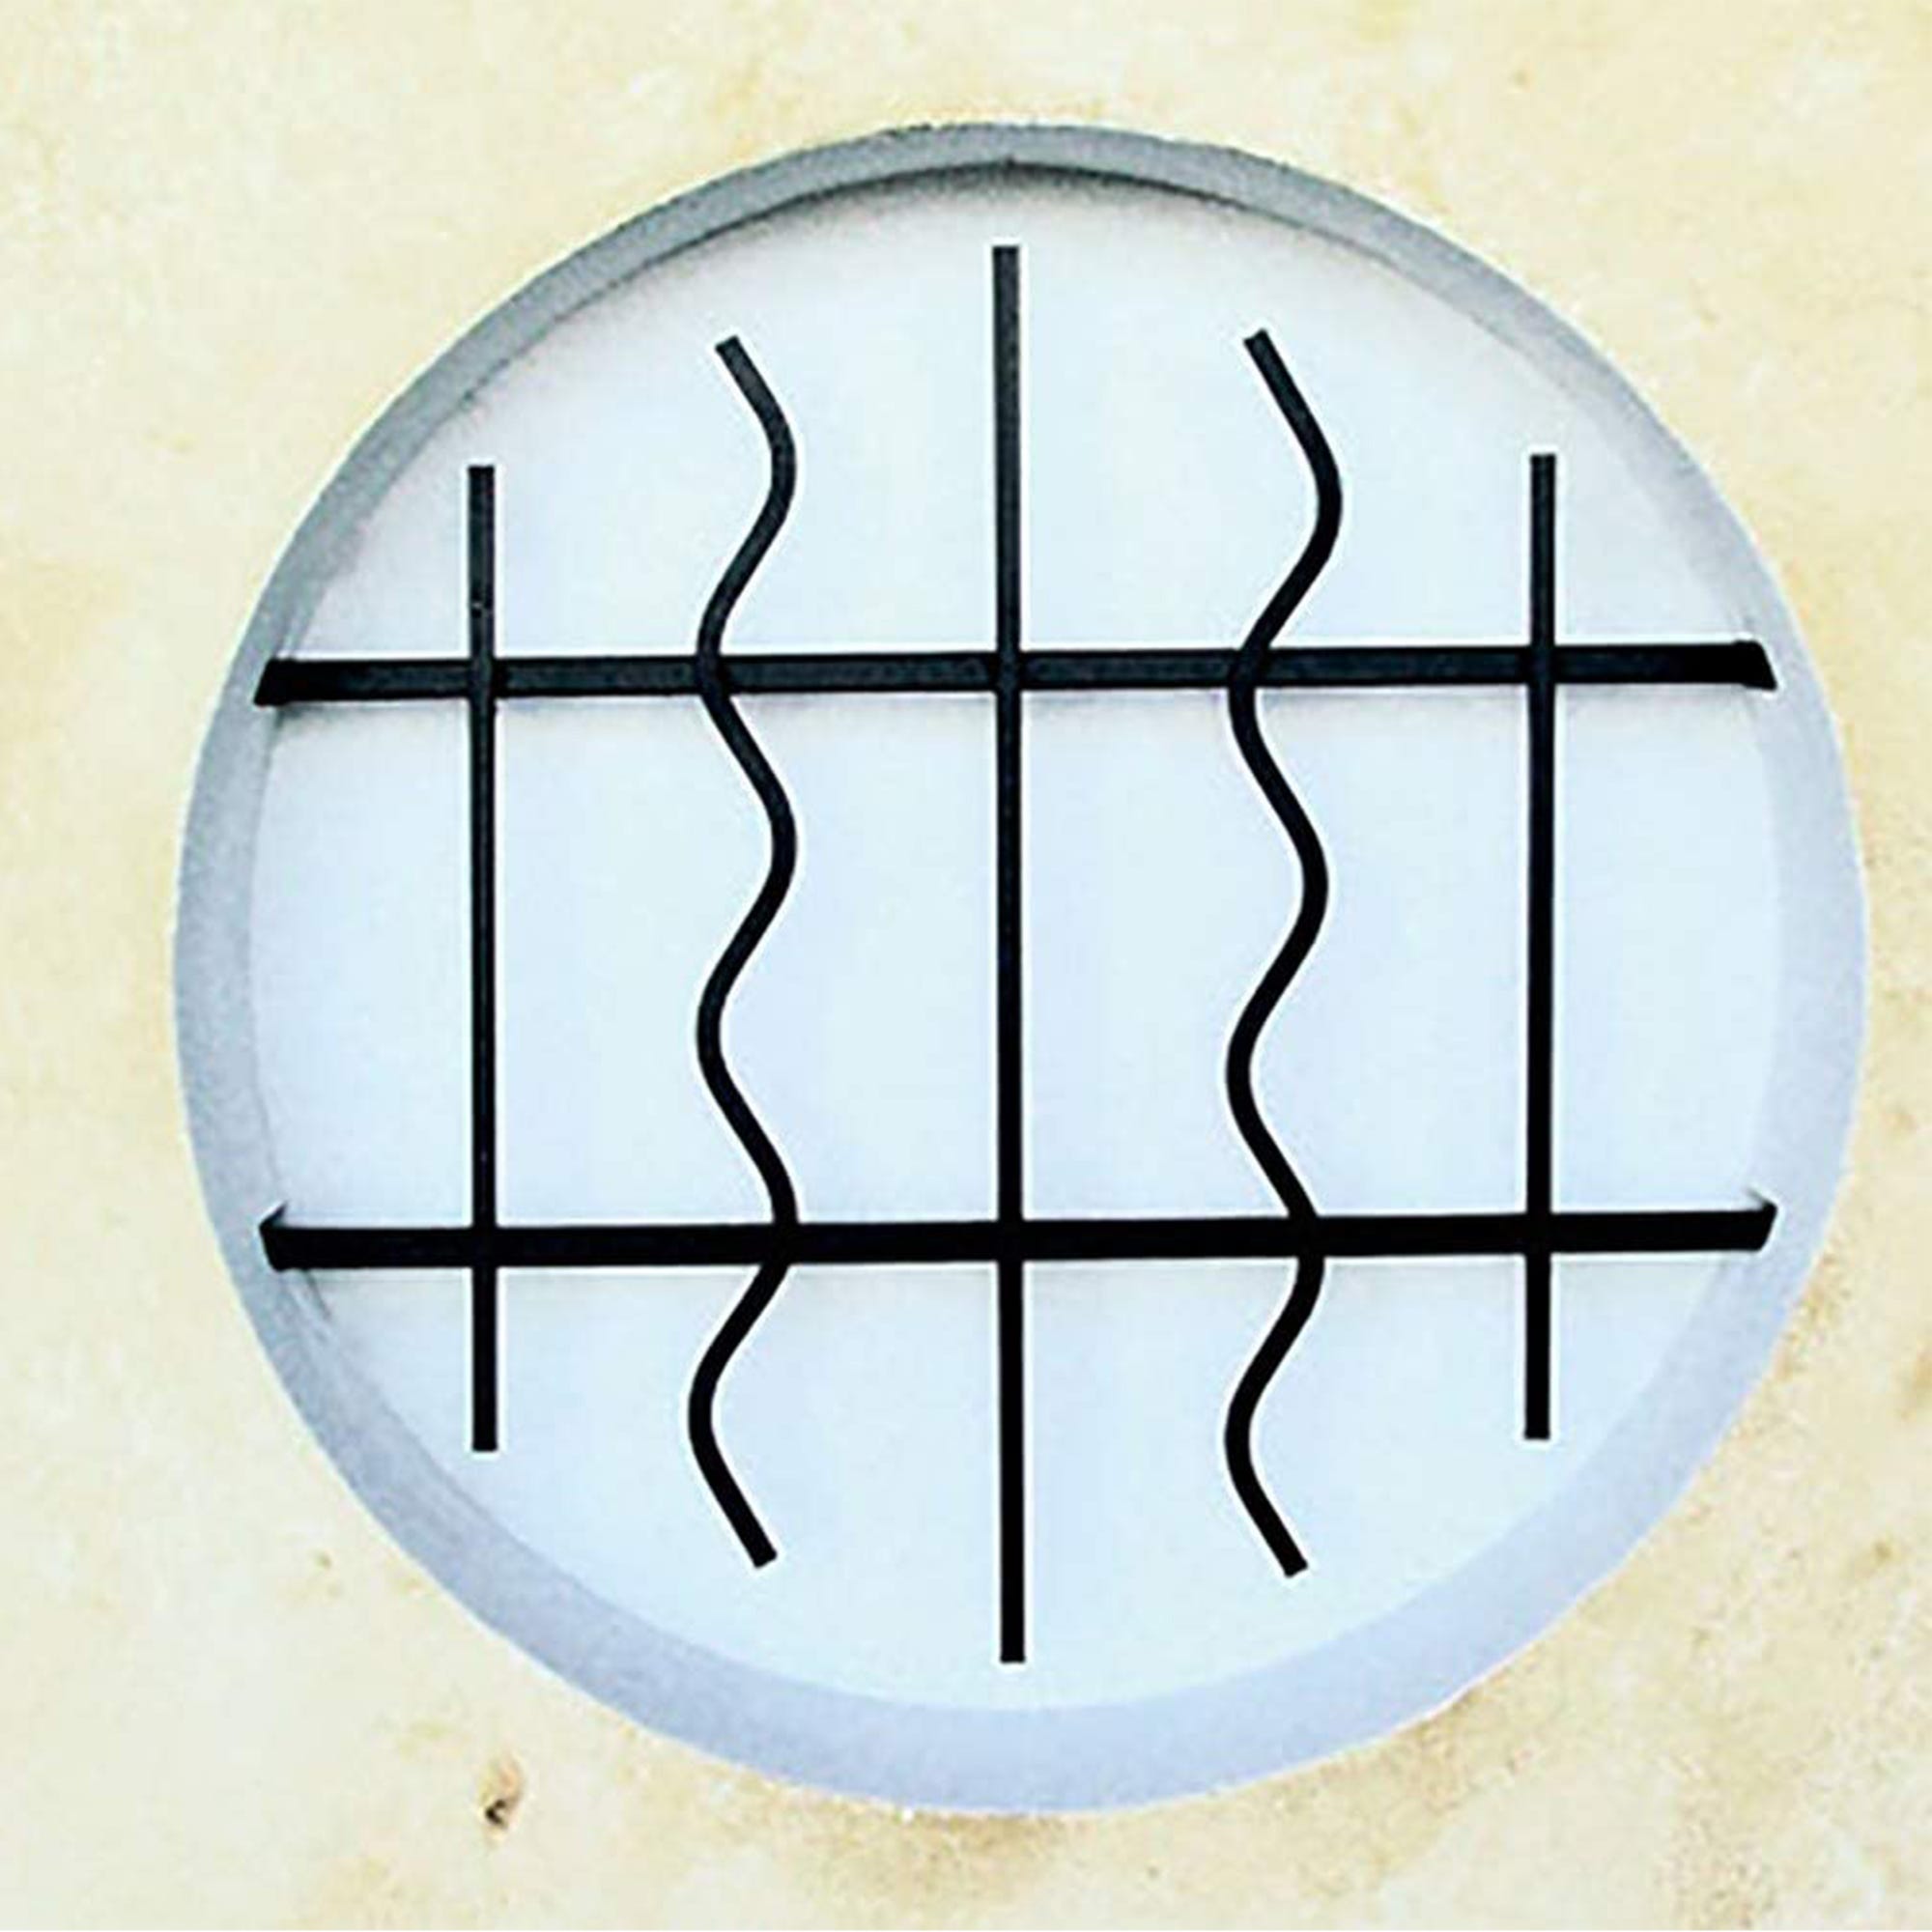 Grille de Defense Azur diametre 100 cm pour Fenetre ronde (côte tableau) 0